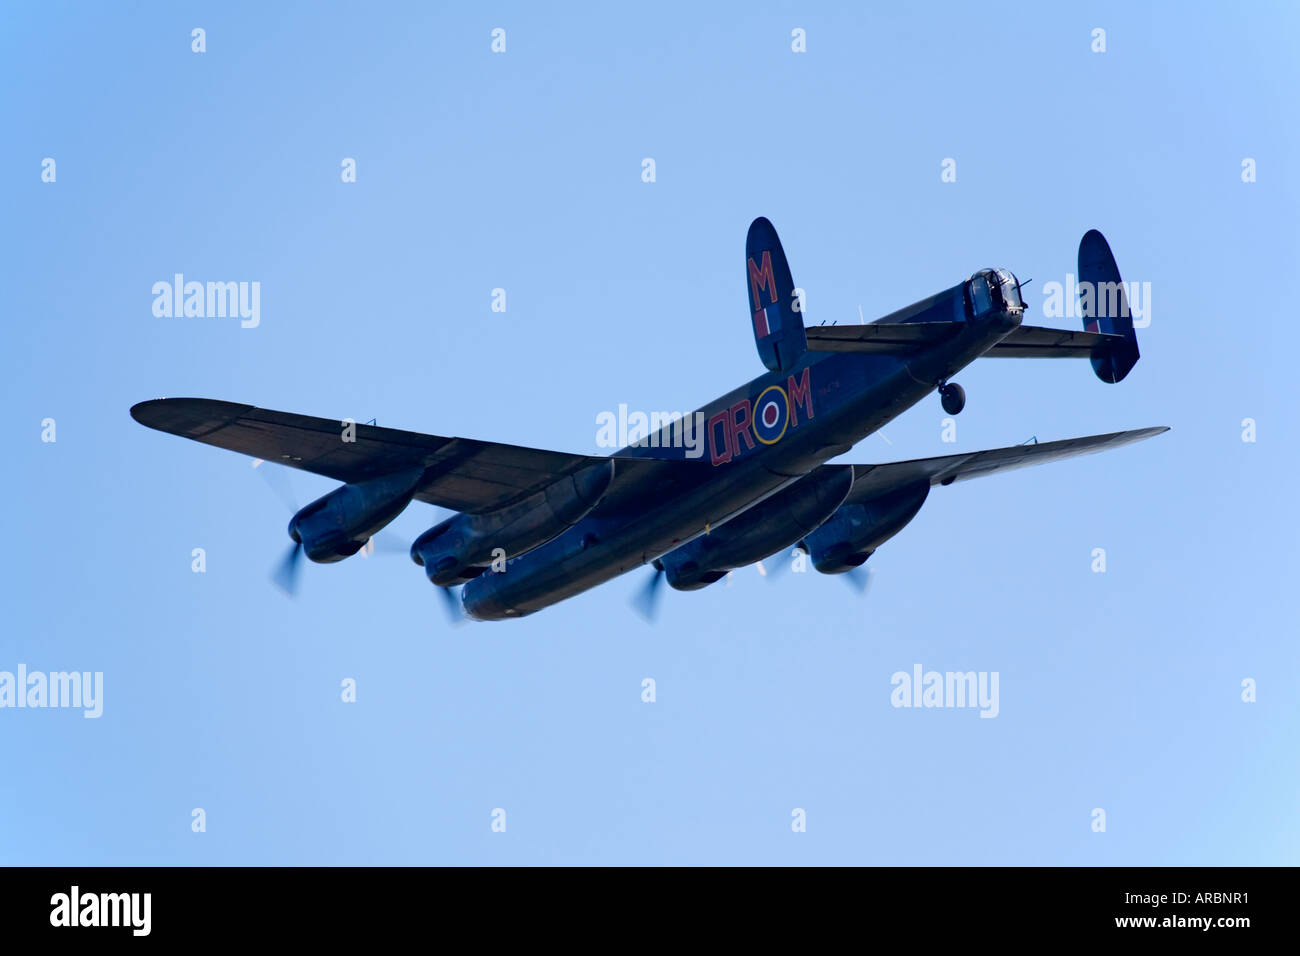 Schlacht von Britain Memorial Flight RAF Lancaster Bomber während des Fluges Stockfoto